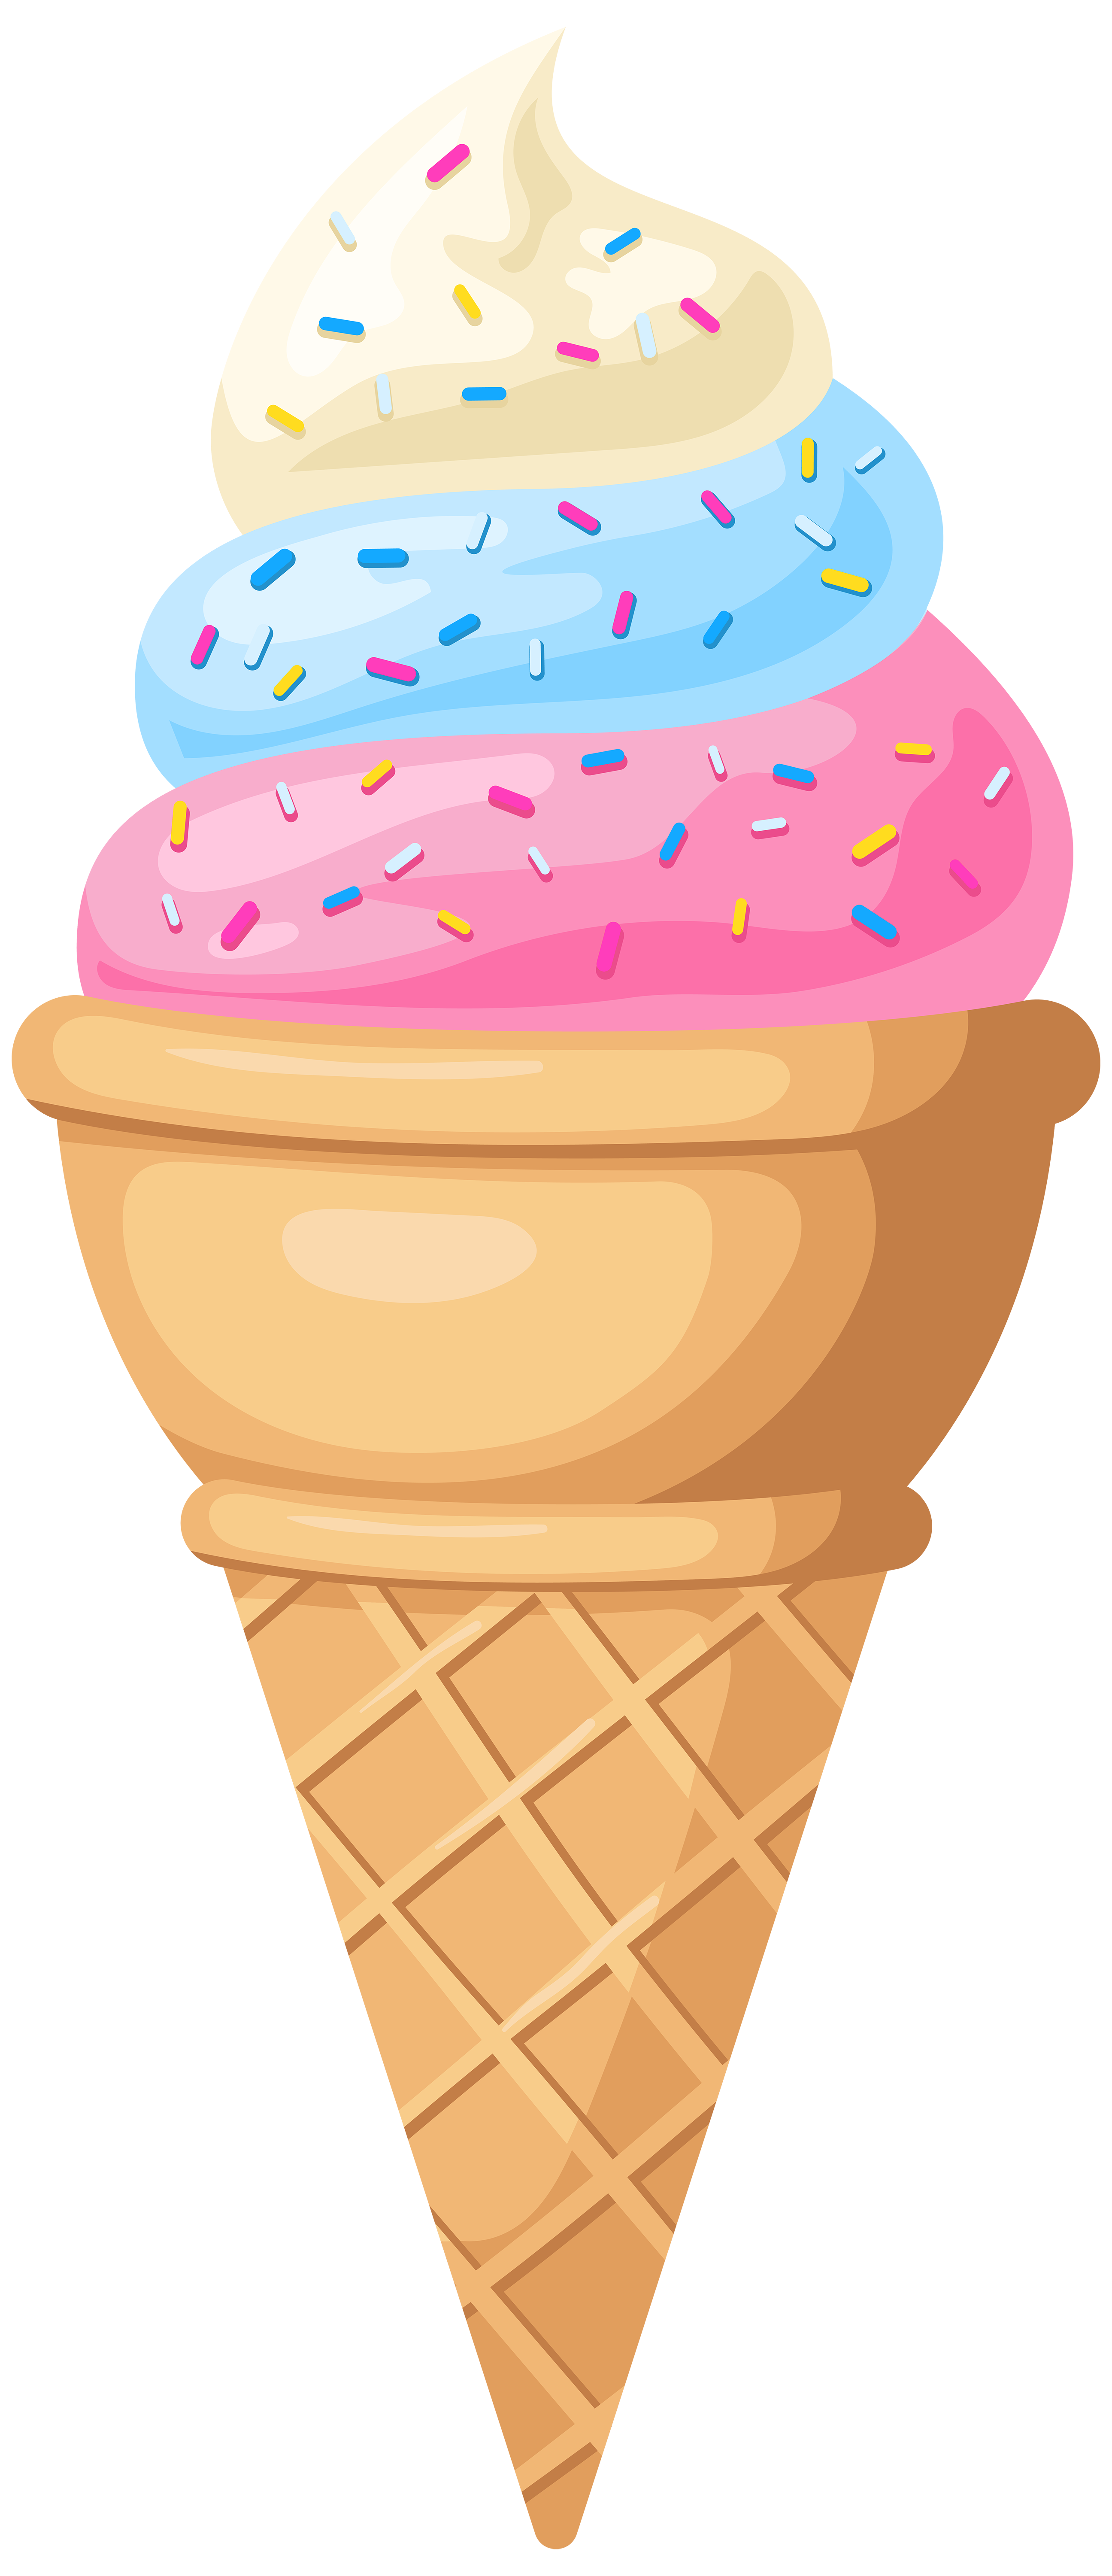 icecream-clipart-ice-cream-cone-icecream-ice-cream-cone-transparent